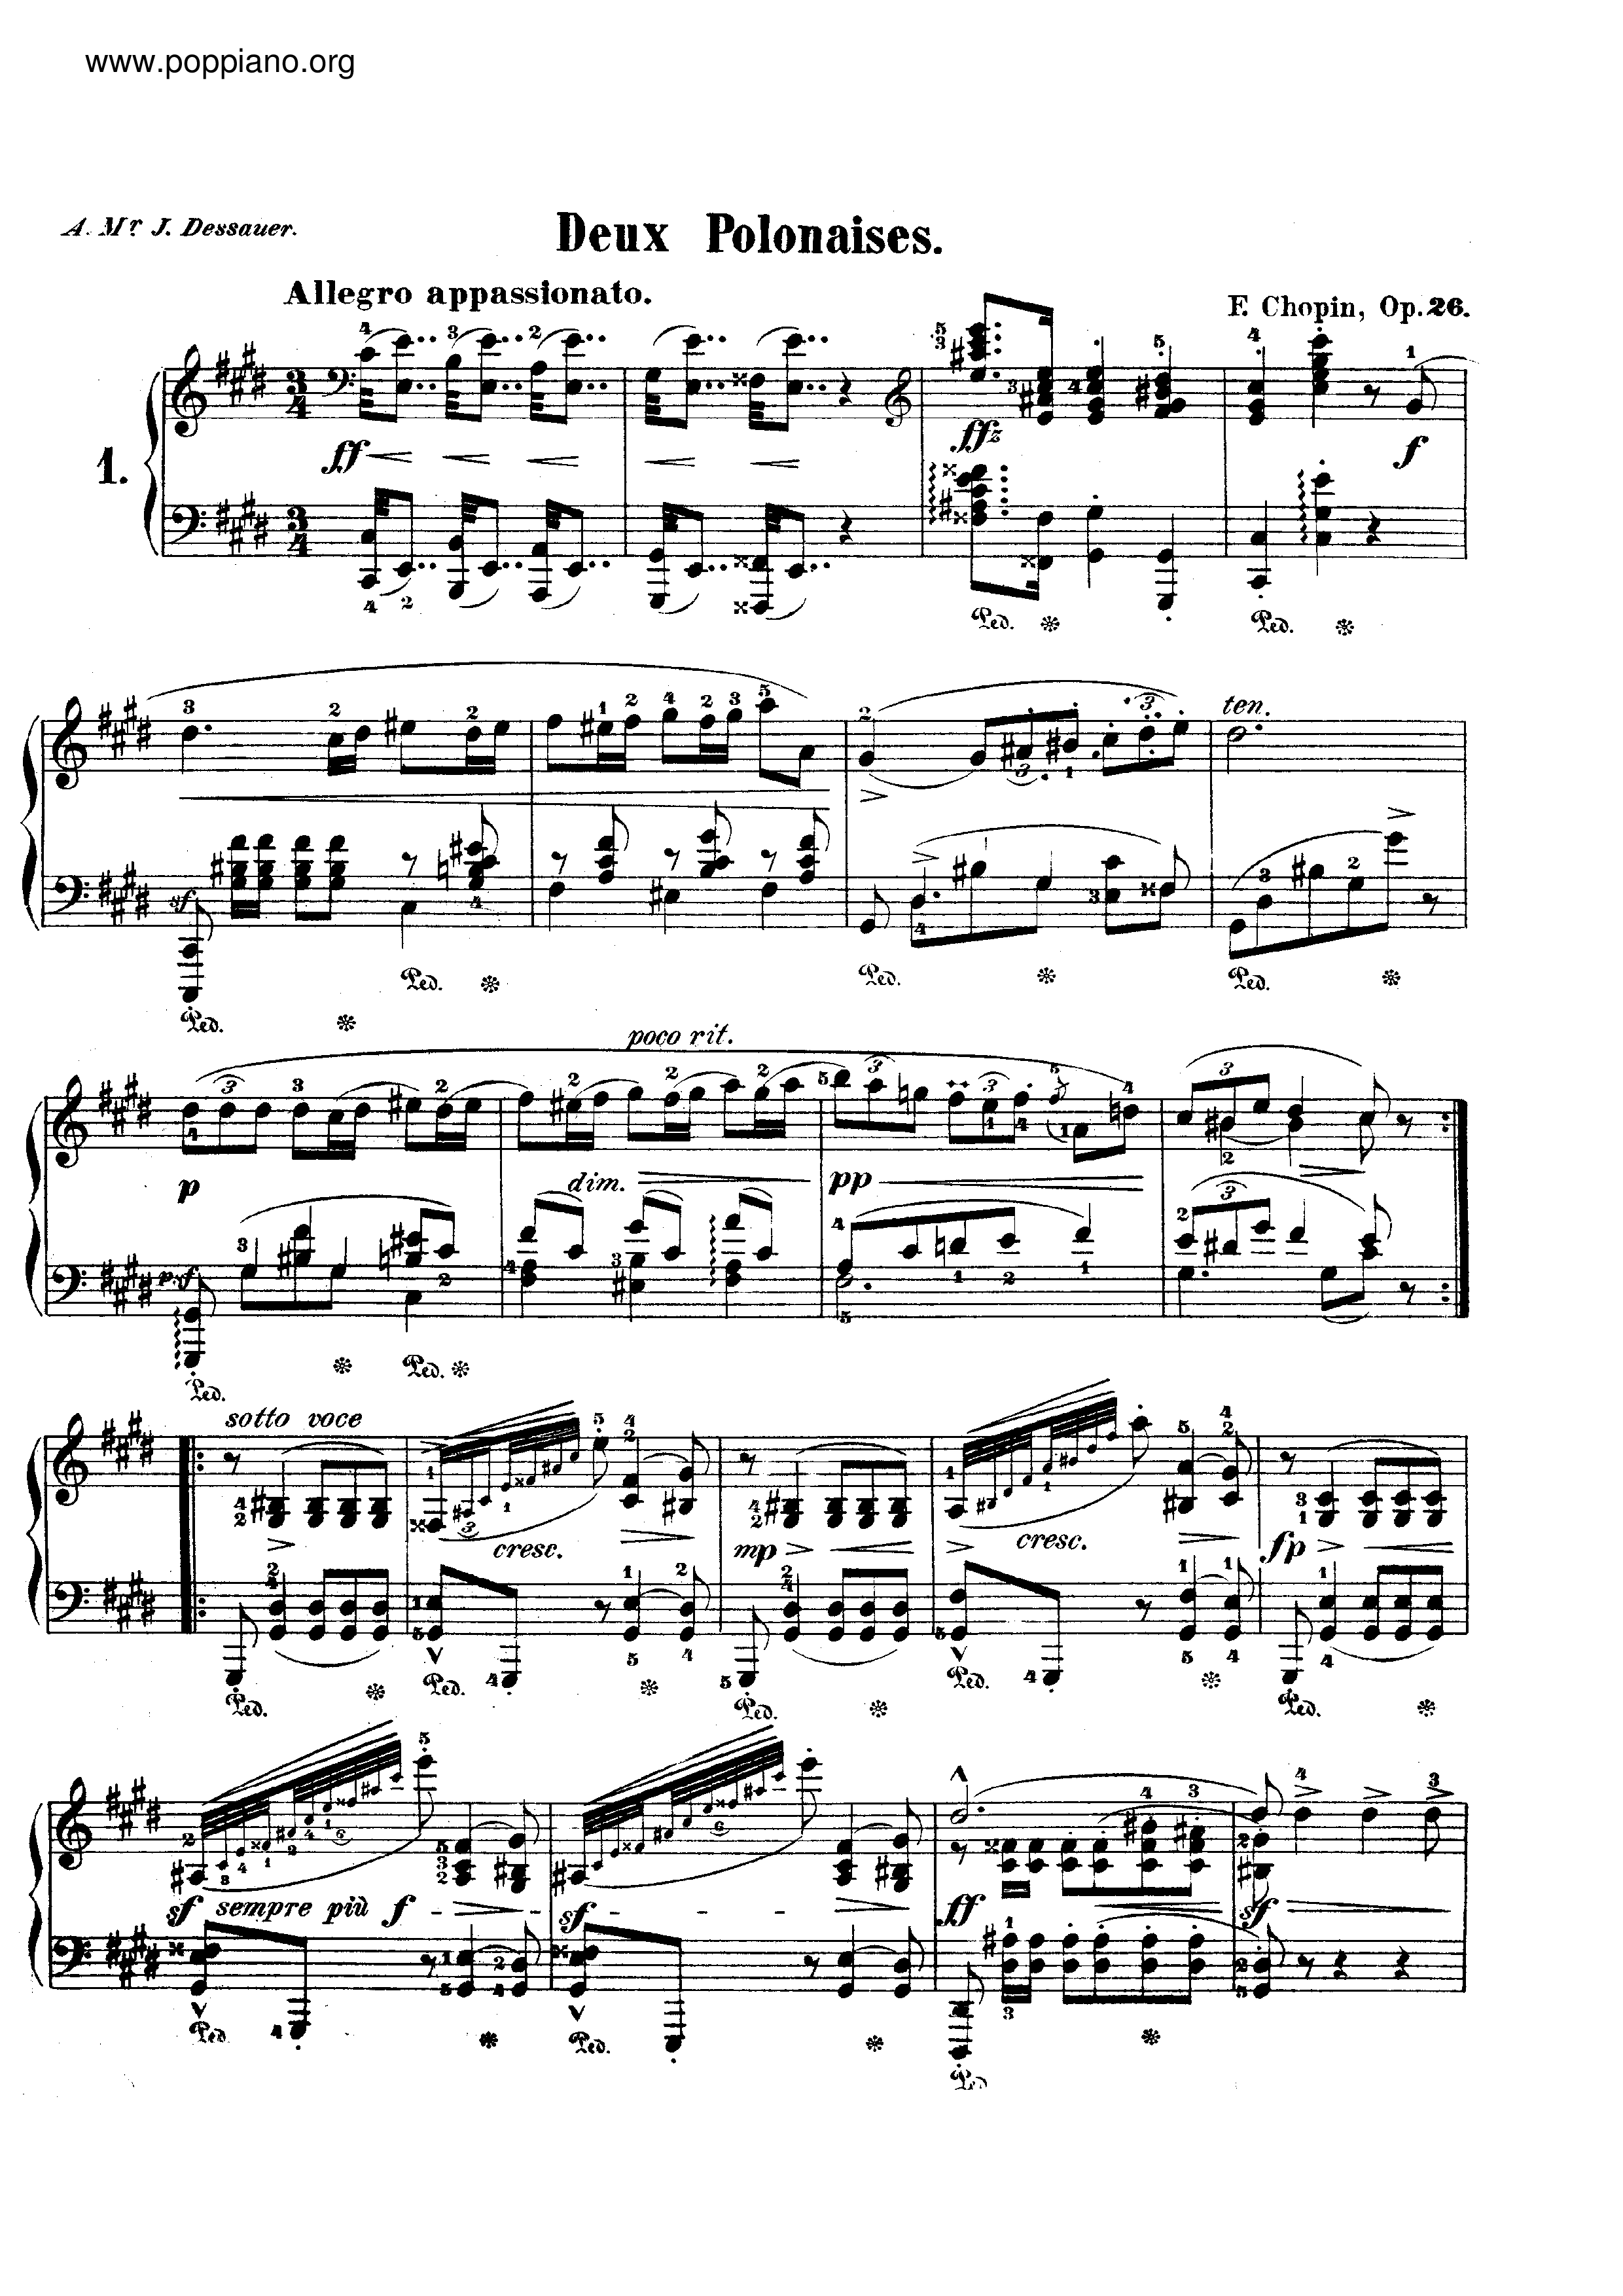 Polonaises, Op. 26 Score